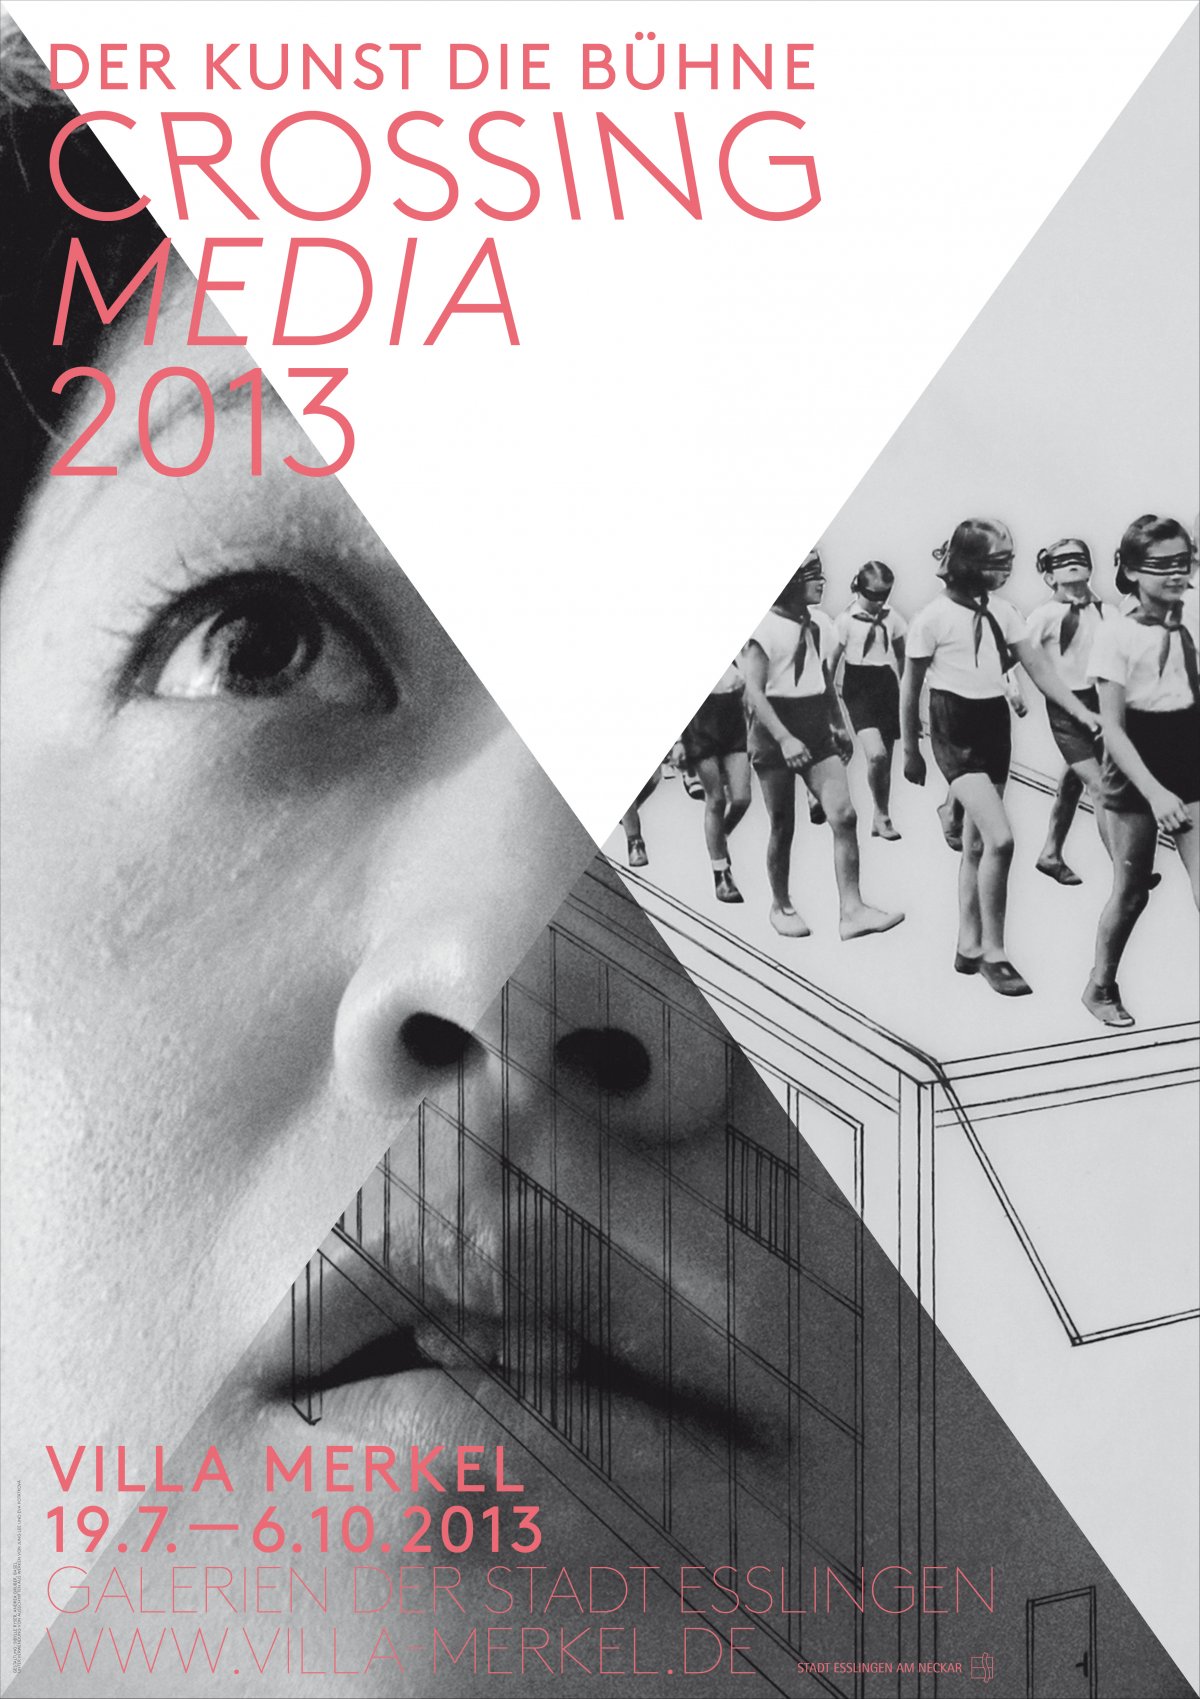 Crossing Media 2013